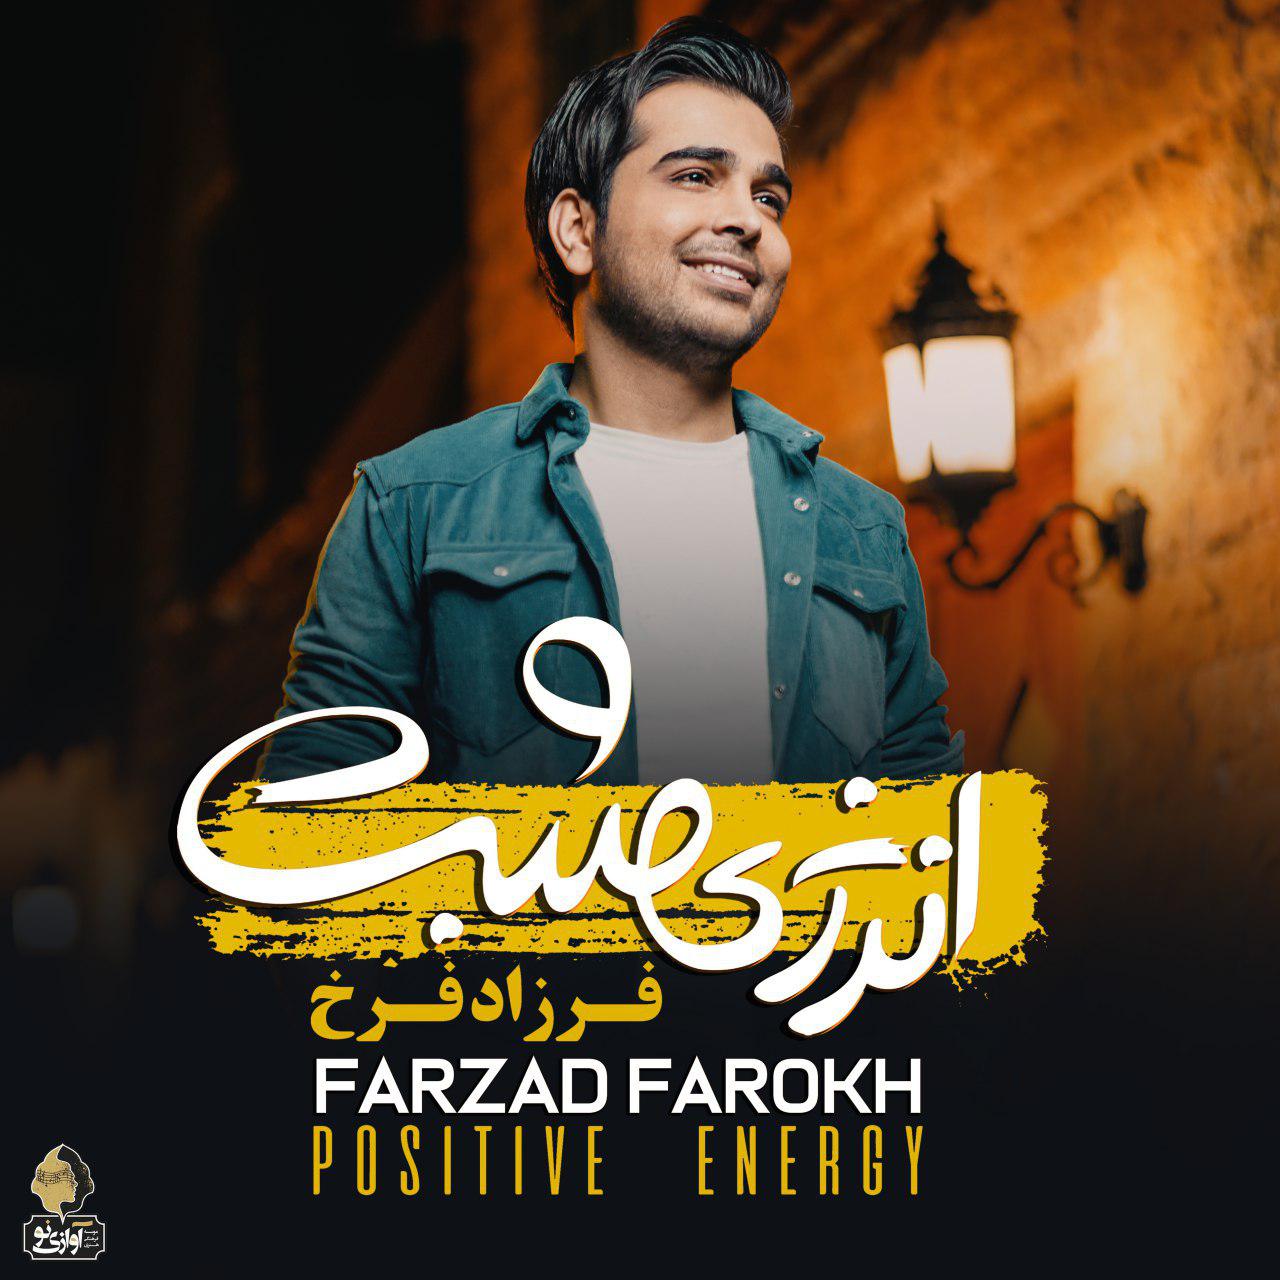  دانلود آهنگ جدید فرزاد فرخ - حس بیخیالی | Download New Music By Farzad Farokh - Hese Bikhiali